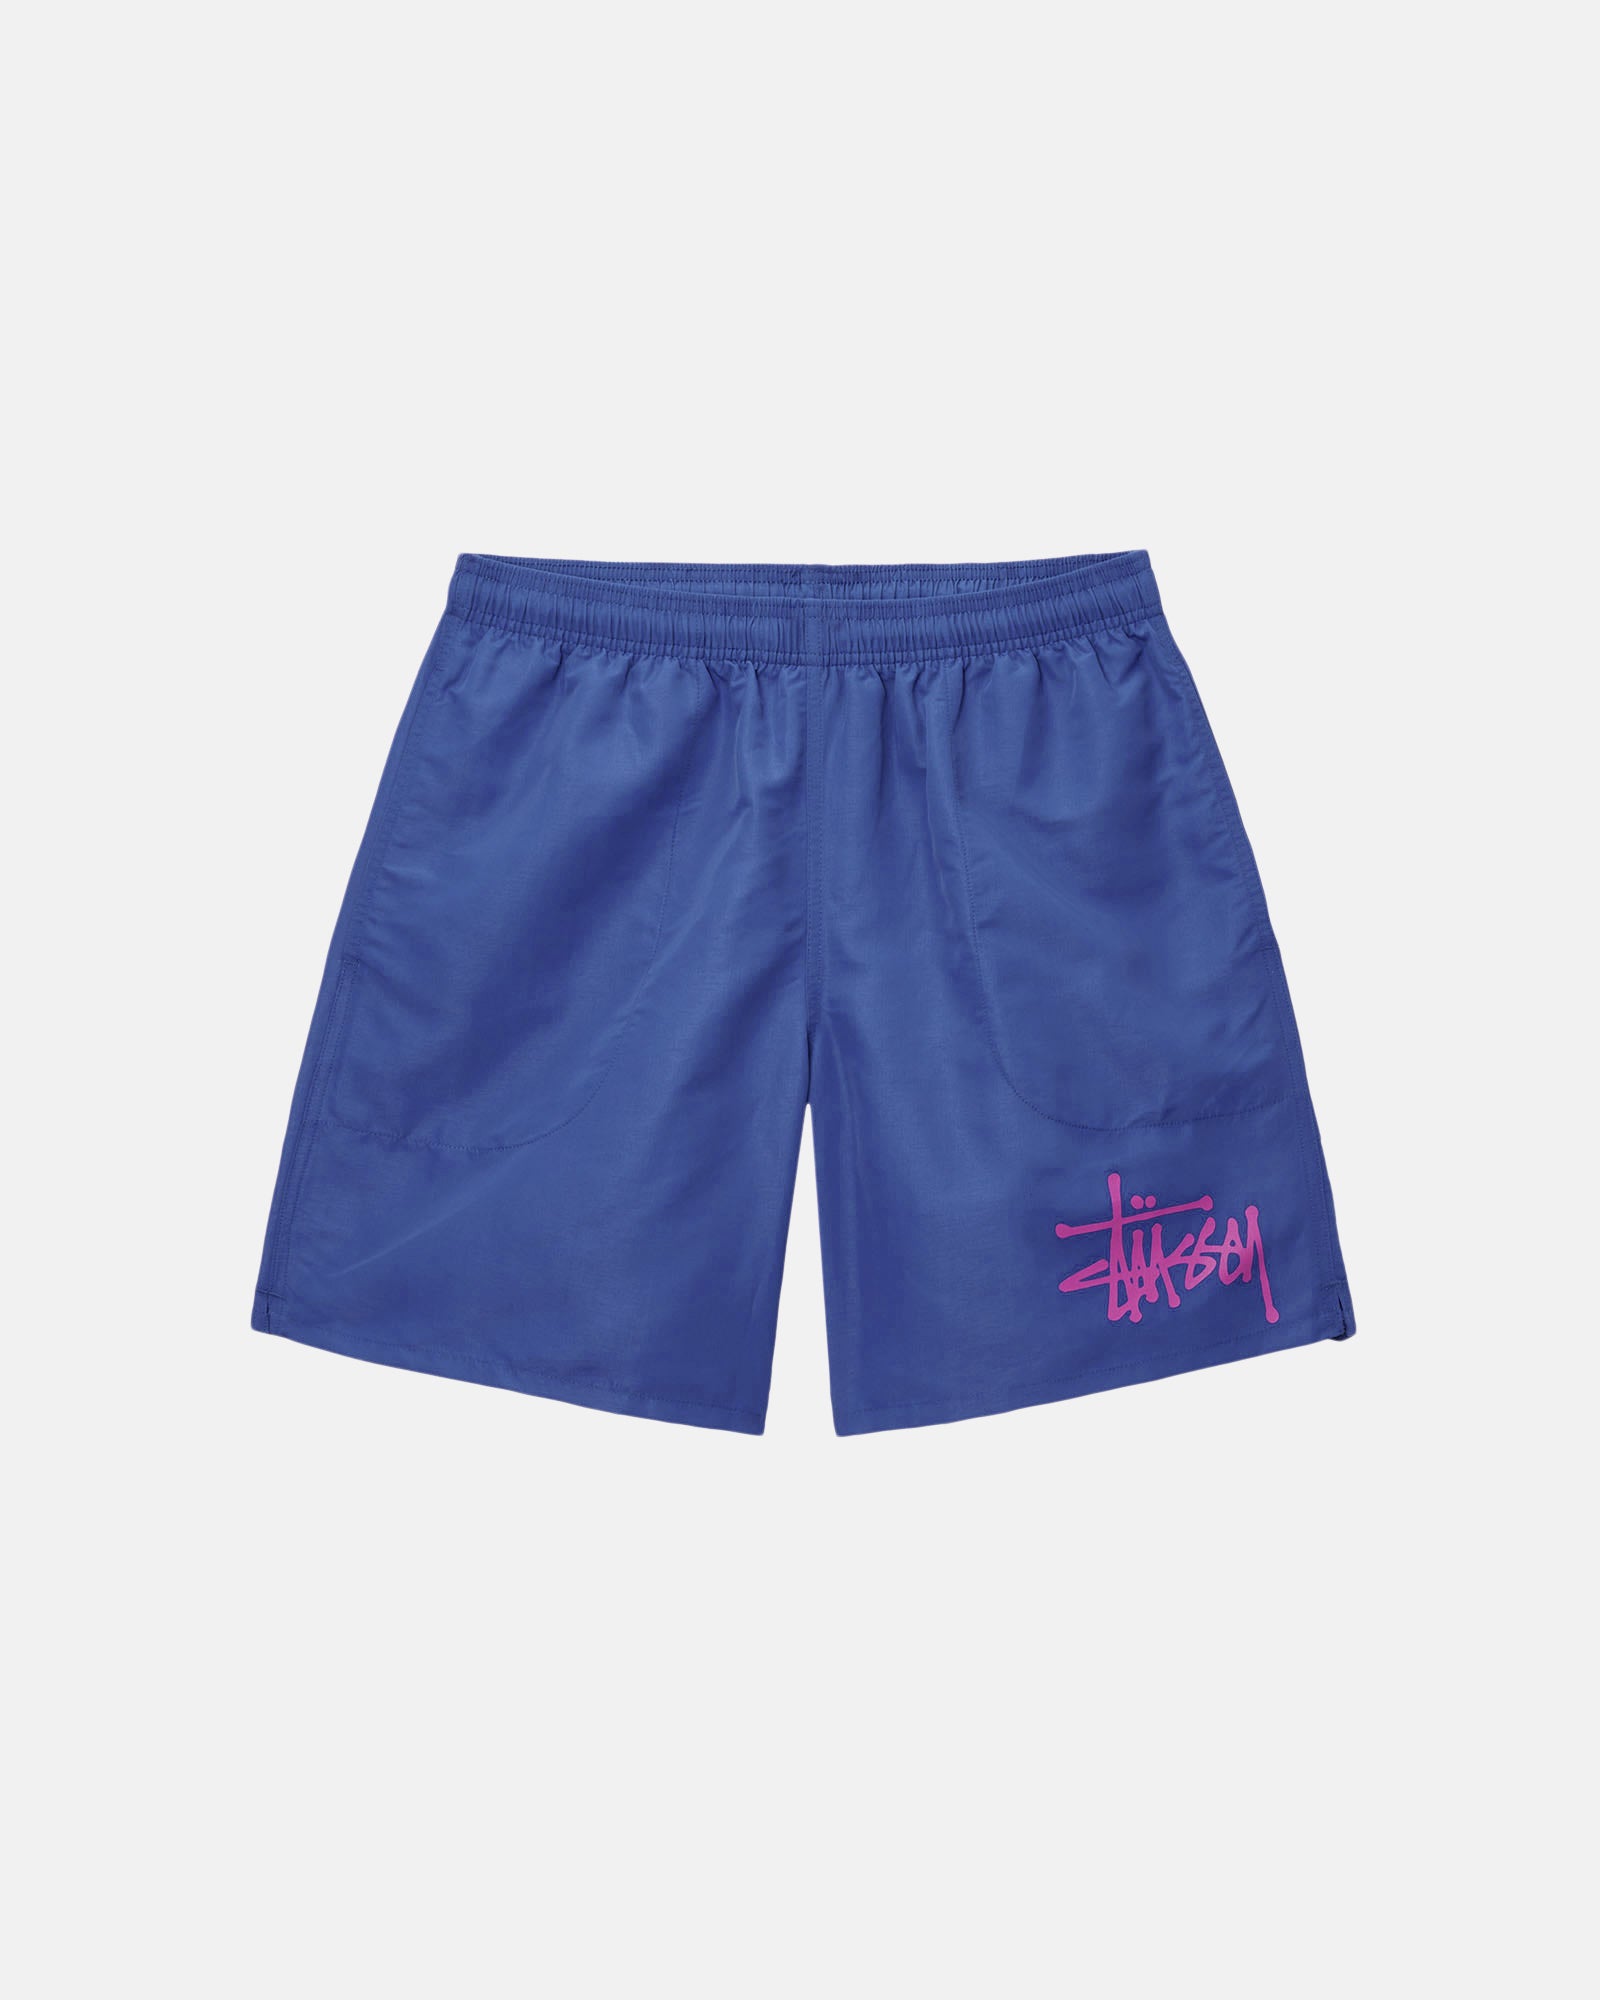 stussy shorts